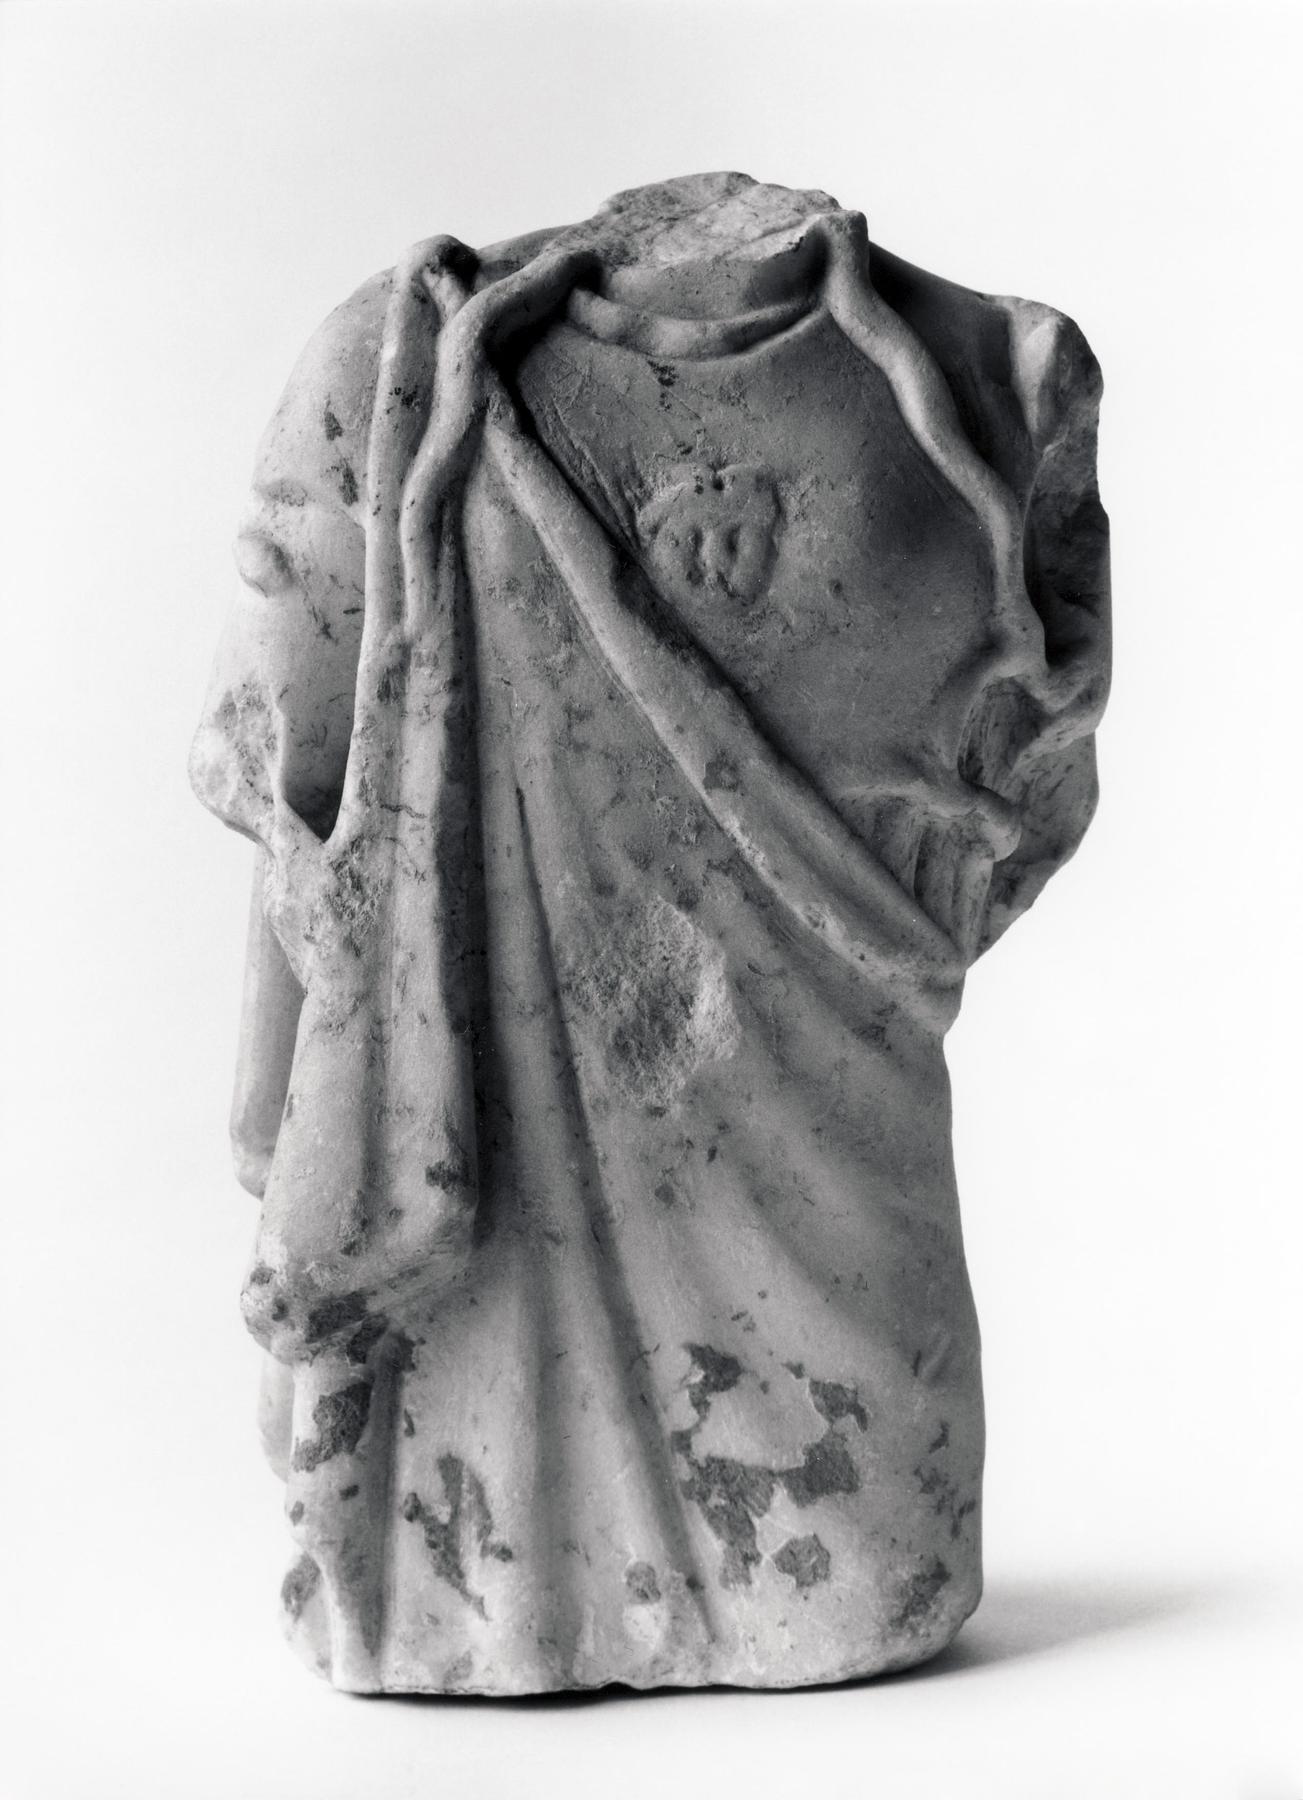 Statuette of Athena/Minerva, H1404